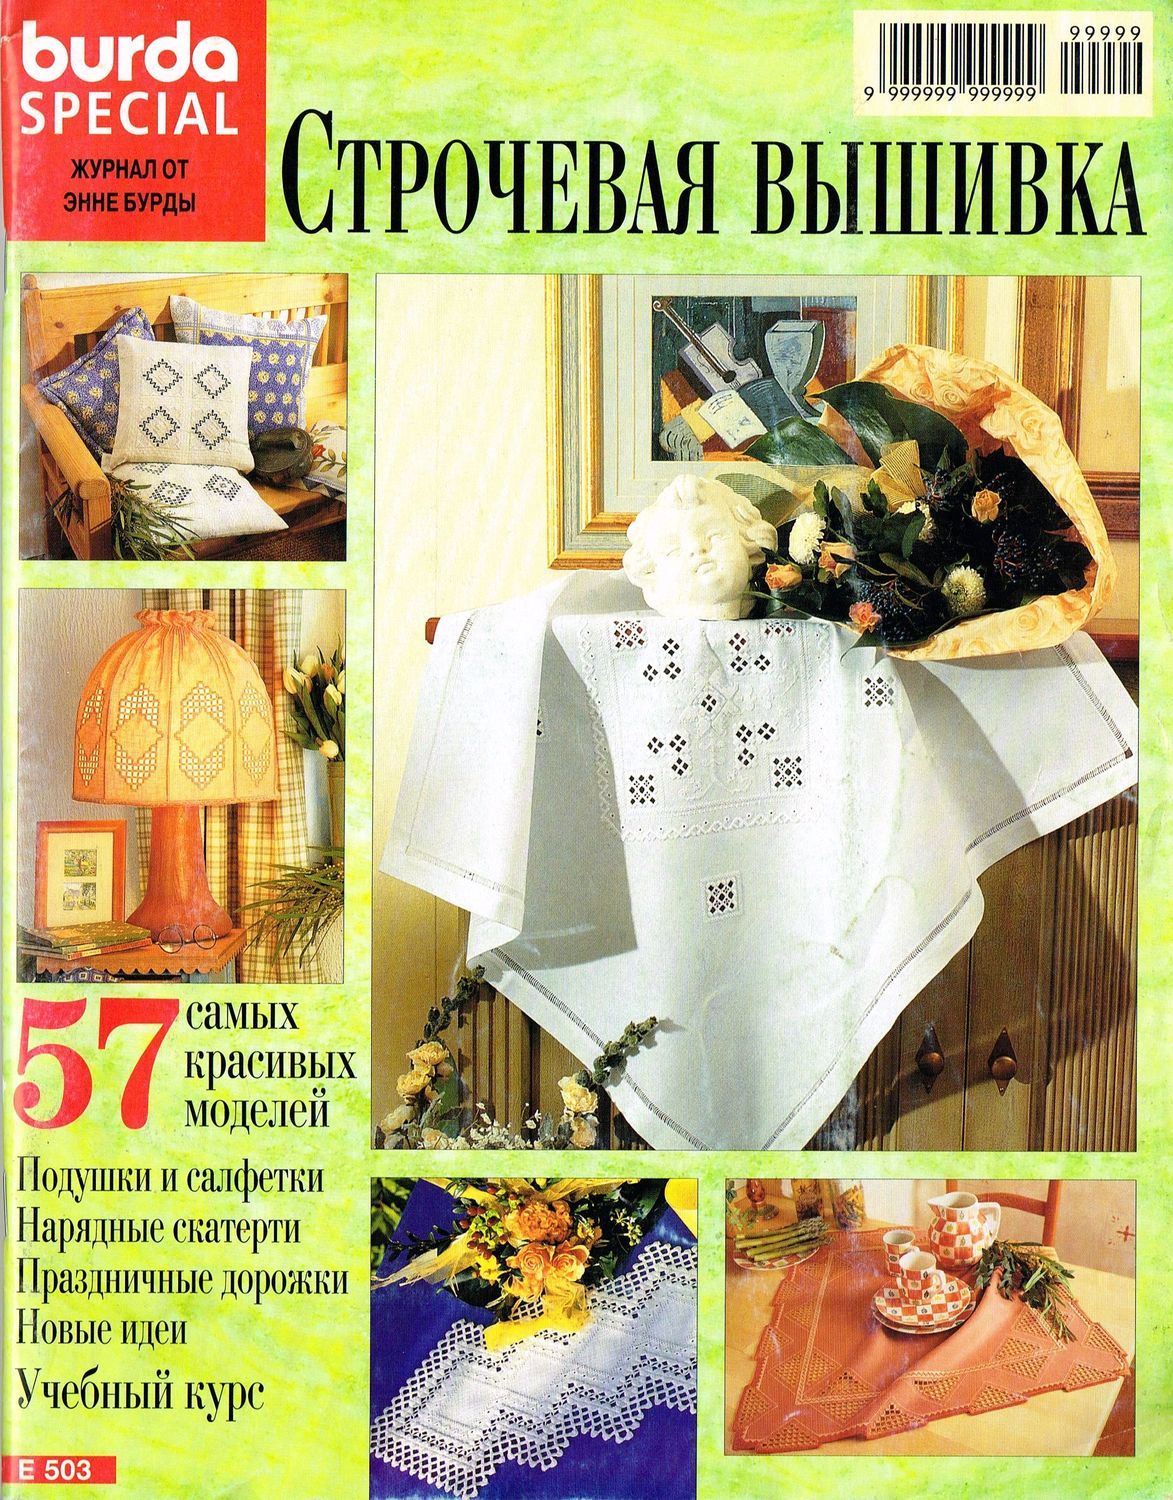 РЕЗЕРВ Журнал Burda  "Строчевая вышивка", Е503, 1998 г, Схемы для вышивки, Москва,  Фото №1